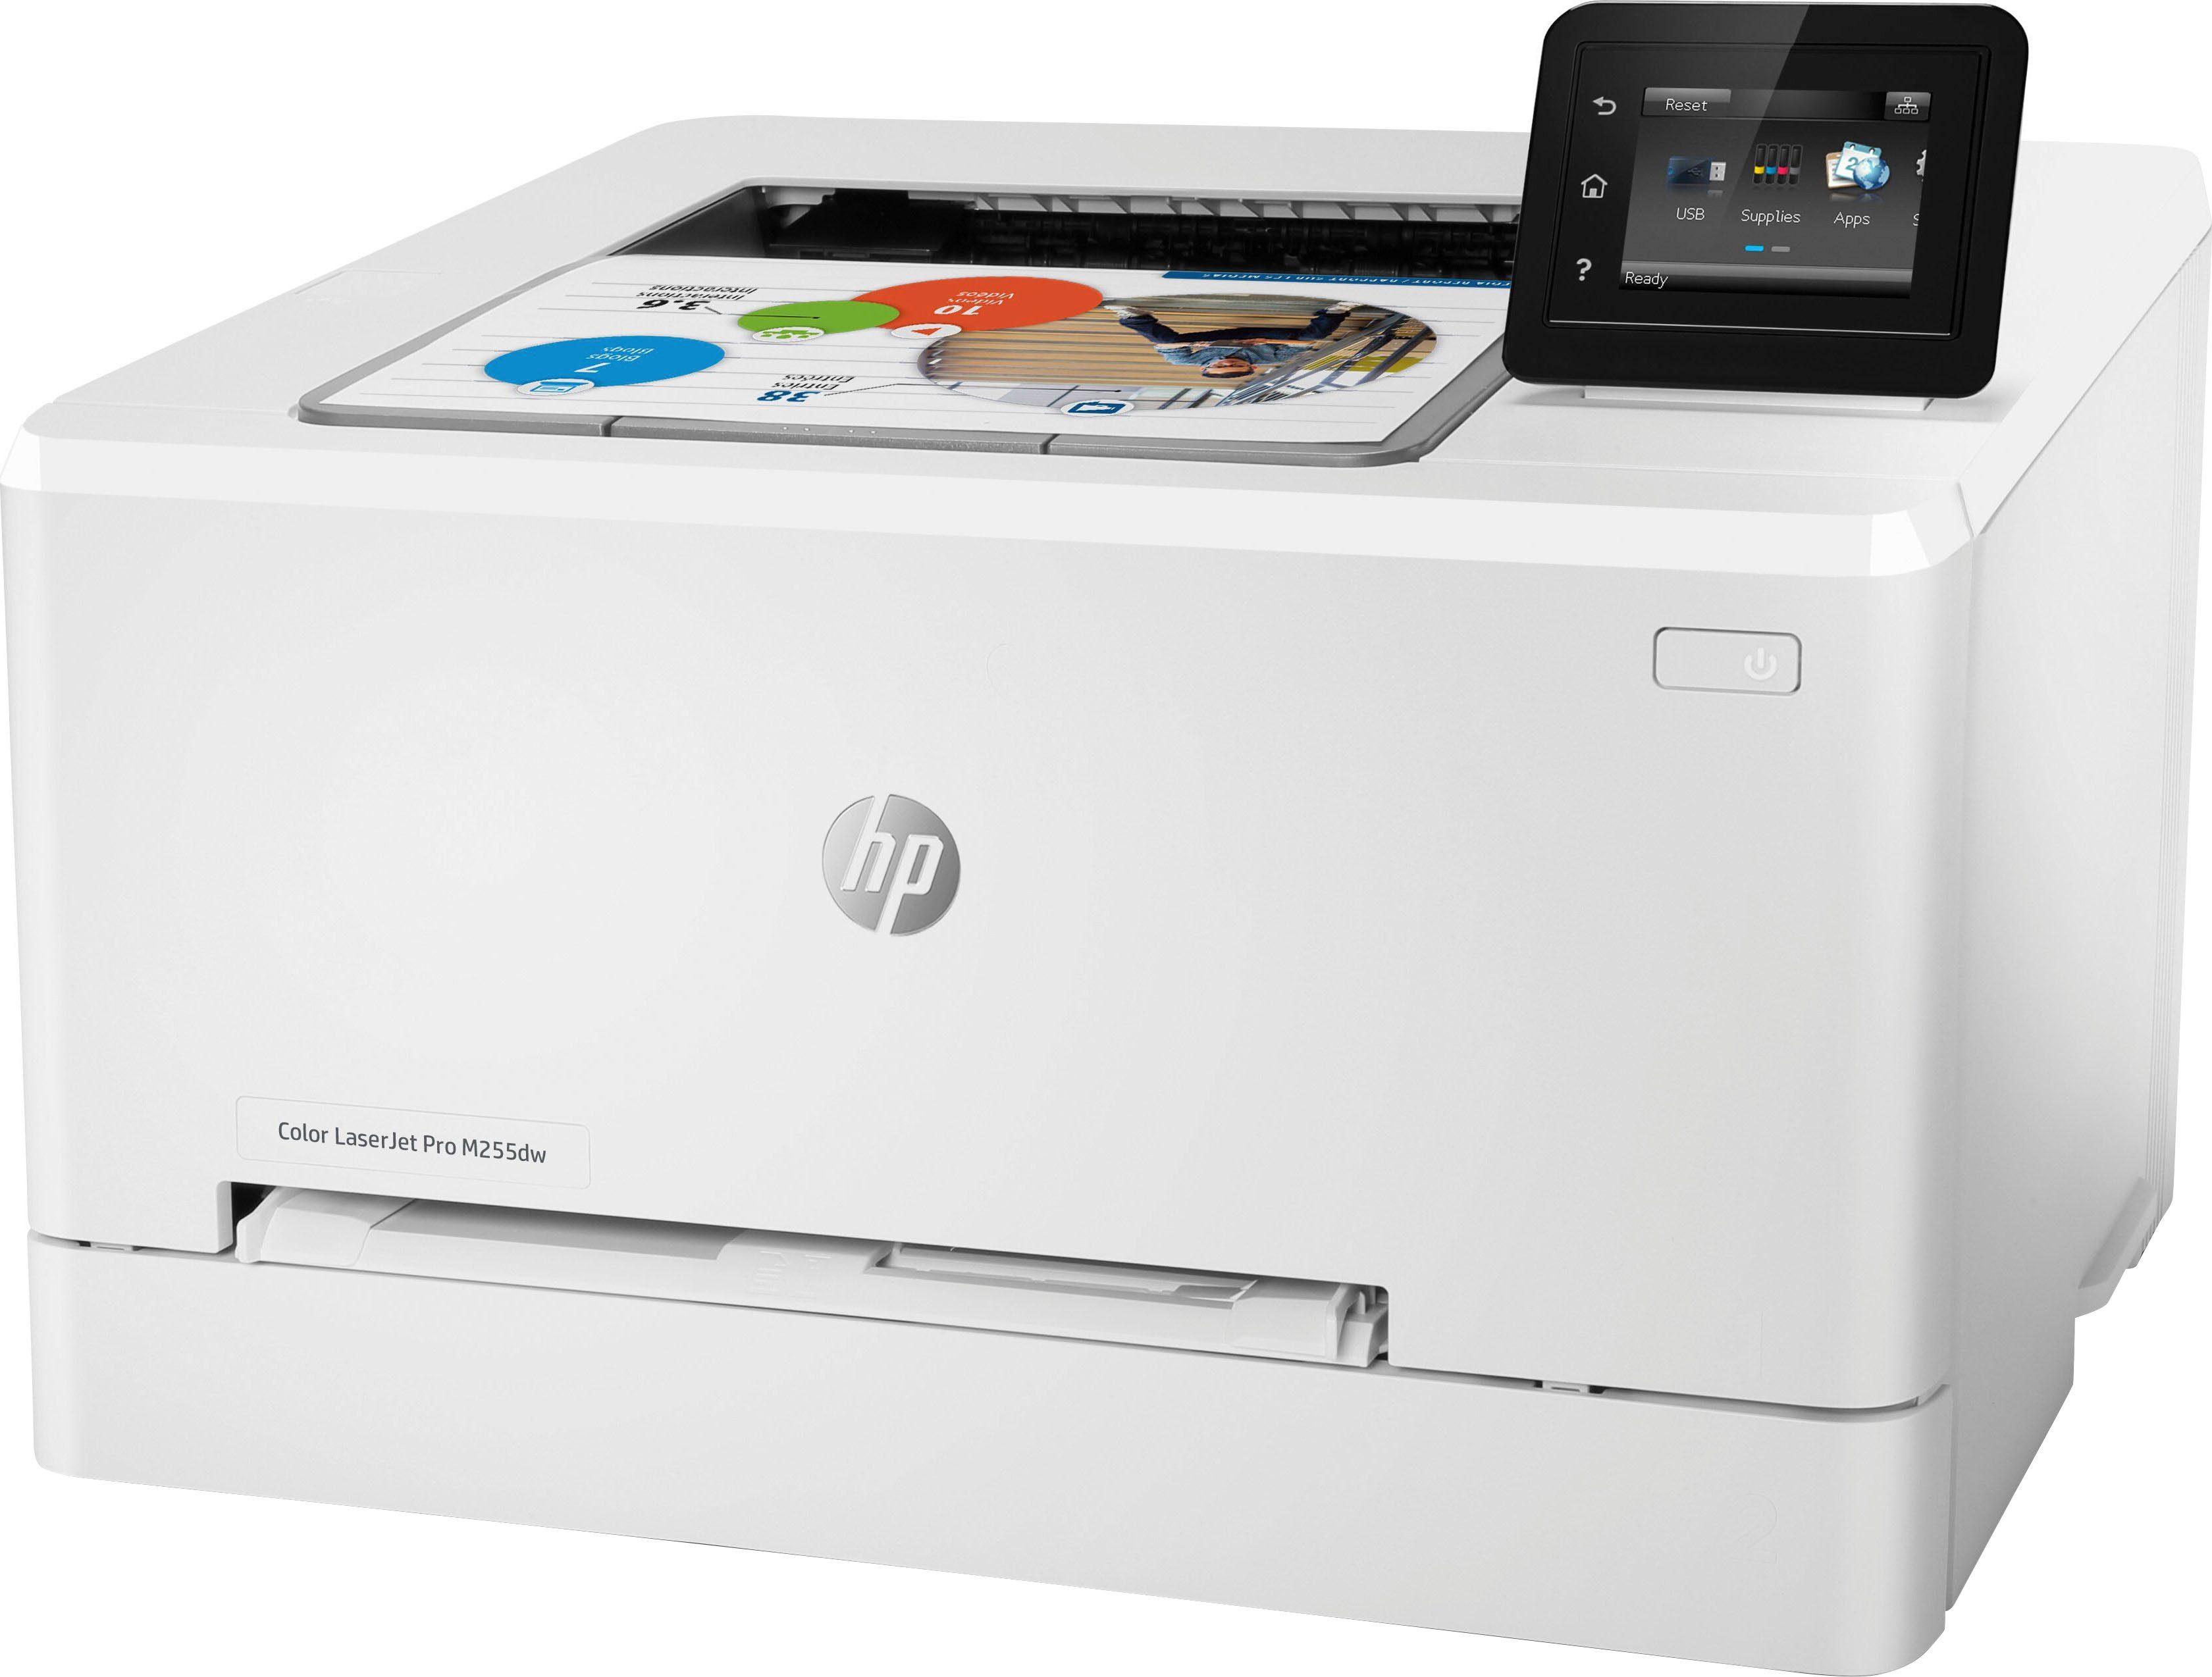 Direct, M255dw Pro HP HP+ (Wi-Fi), Instant Ink (WLAN kompatibel) LaserJet Color Multifunktionsdrucker, Wi-Fi